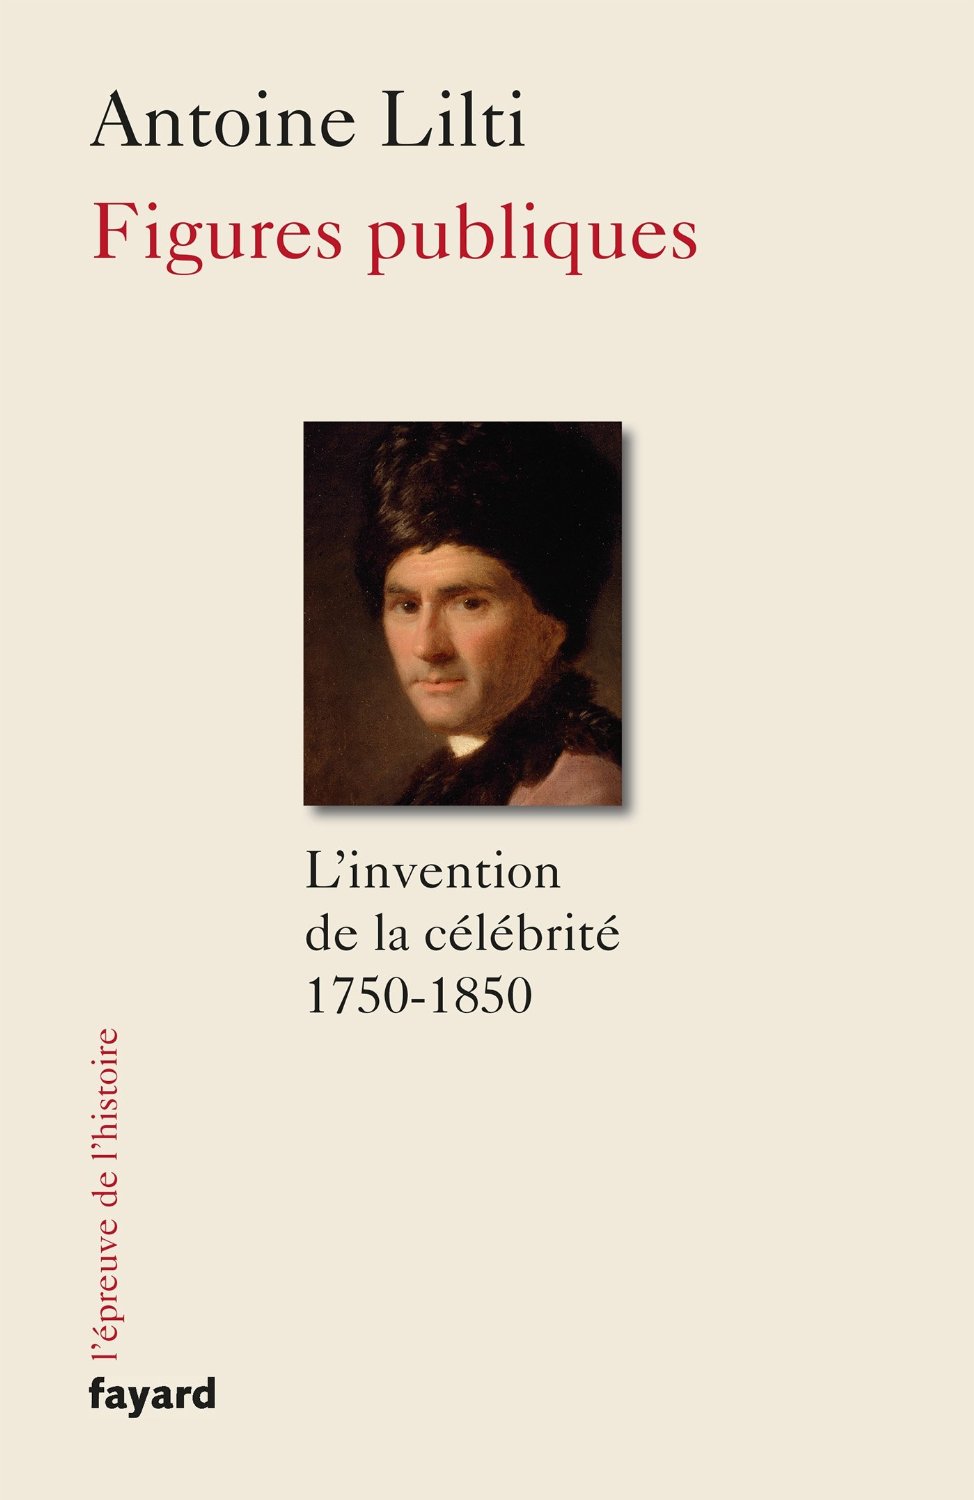 « L'invention de la célébrité (1750-1850) » d'Antoine Lilti